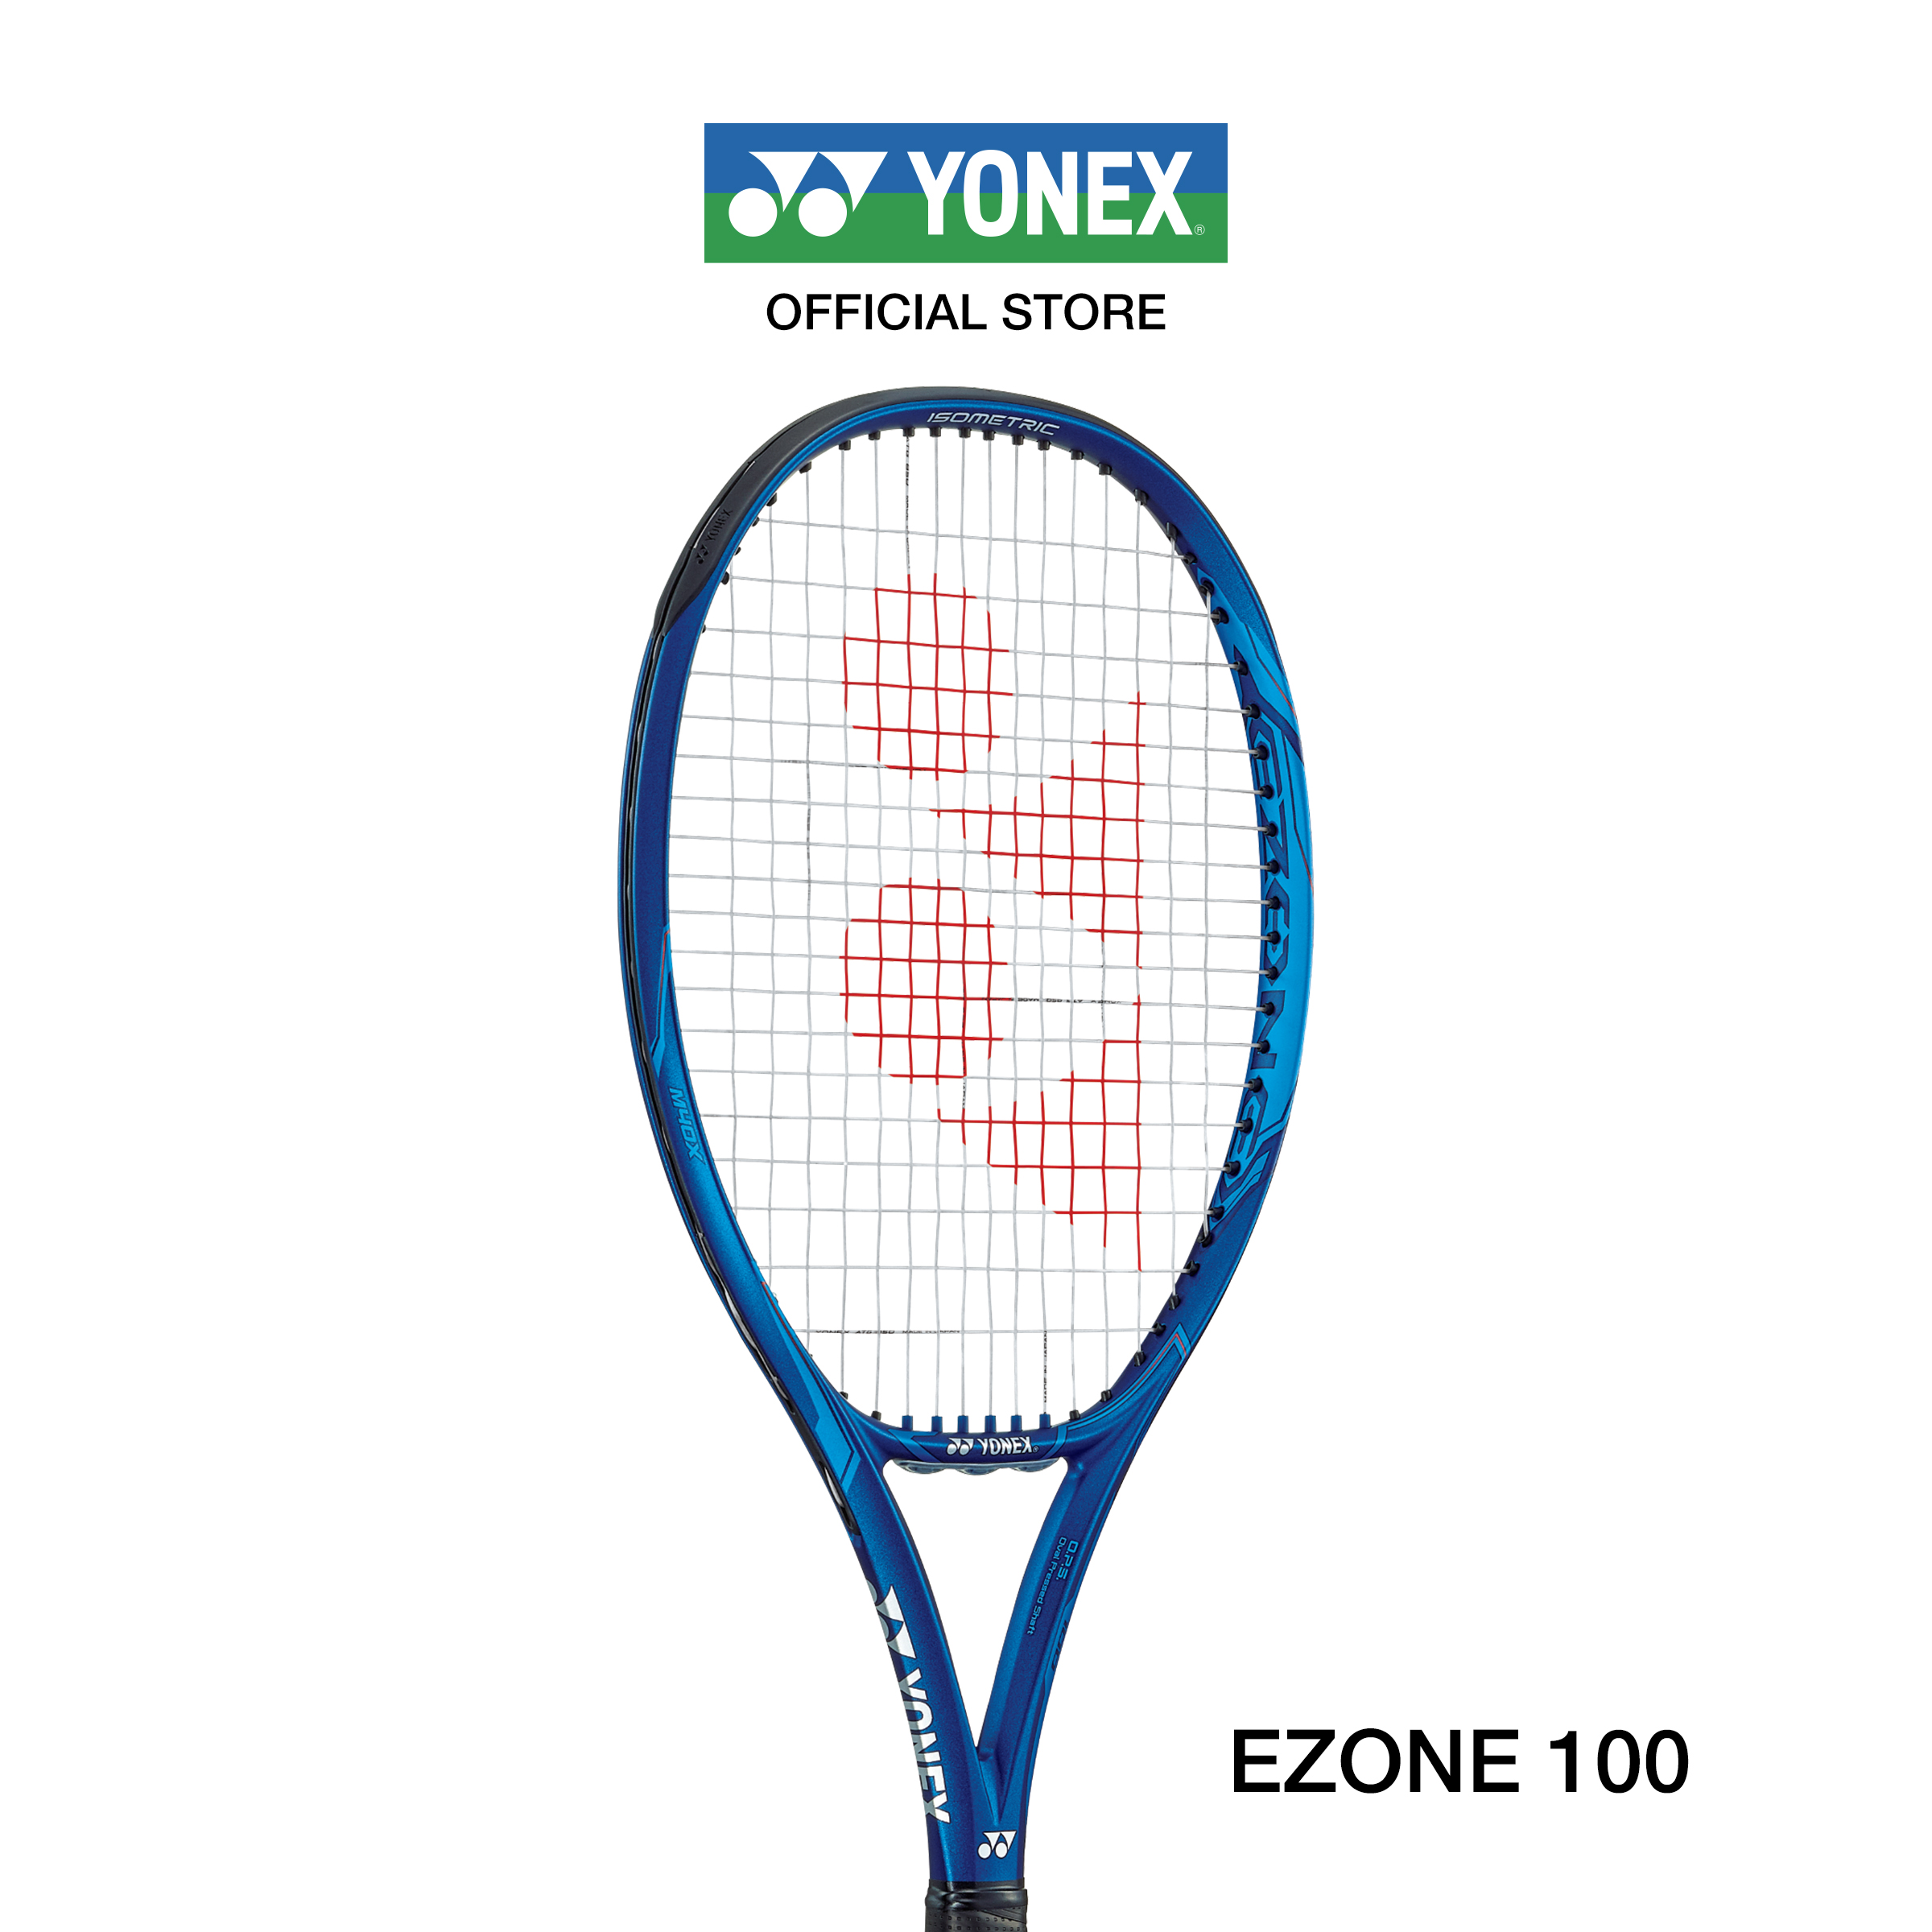 YONEX ไม้เทนนิส รุ่น EZONE 100 (2020) น้ำหนัก 275 กรัม G2 ไม้เทนนิสสายพลังเหมาะสำหรับผู้เล่นทั่วไปที่มองหาเฟรมหน้ากว้างพิเศษ แถมเอ็น PTGP125